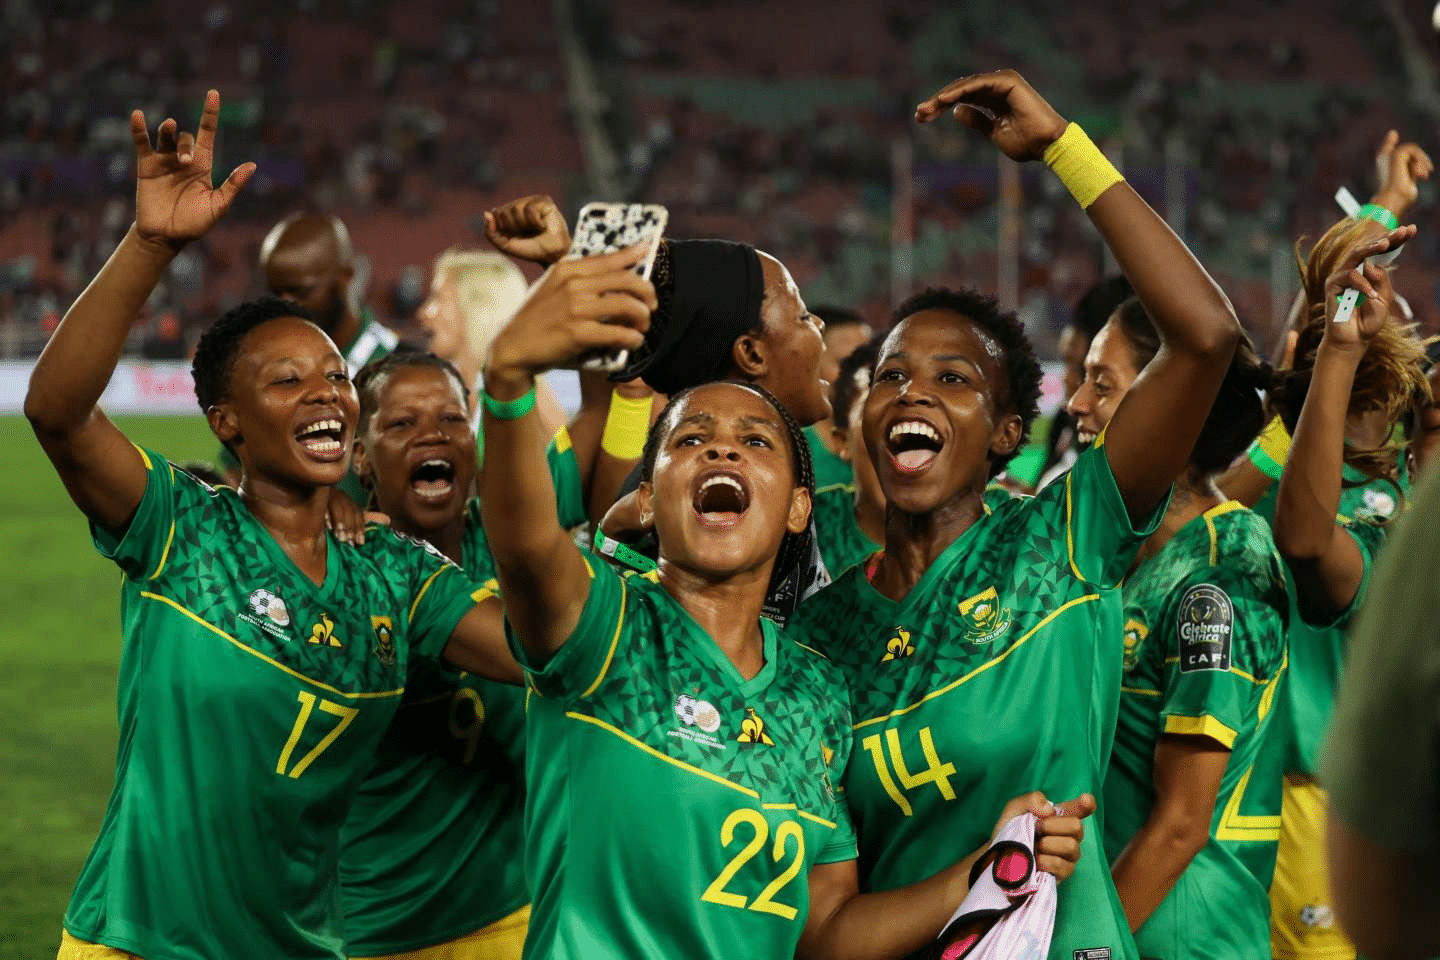 La dernière journée des matches aller des éliminatoires de la Coupe d'Afrique des Nations féminine